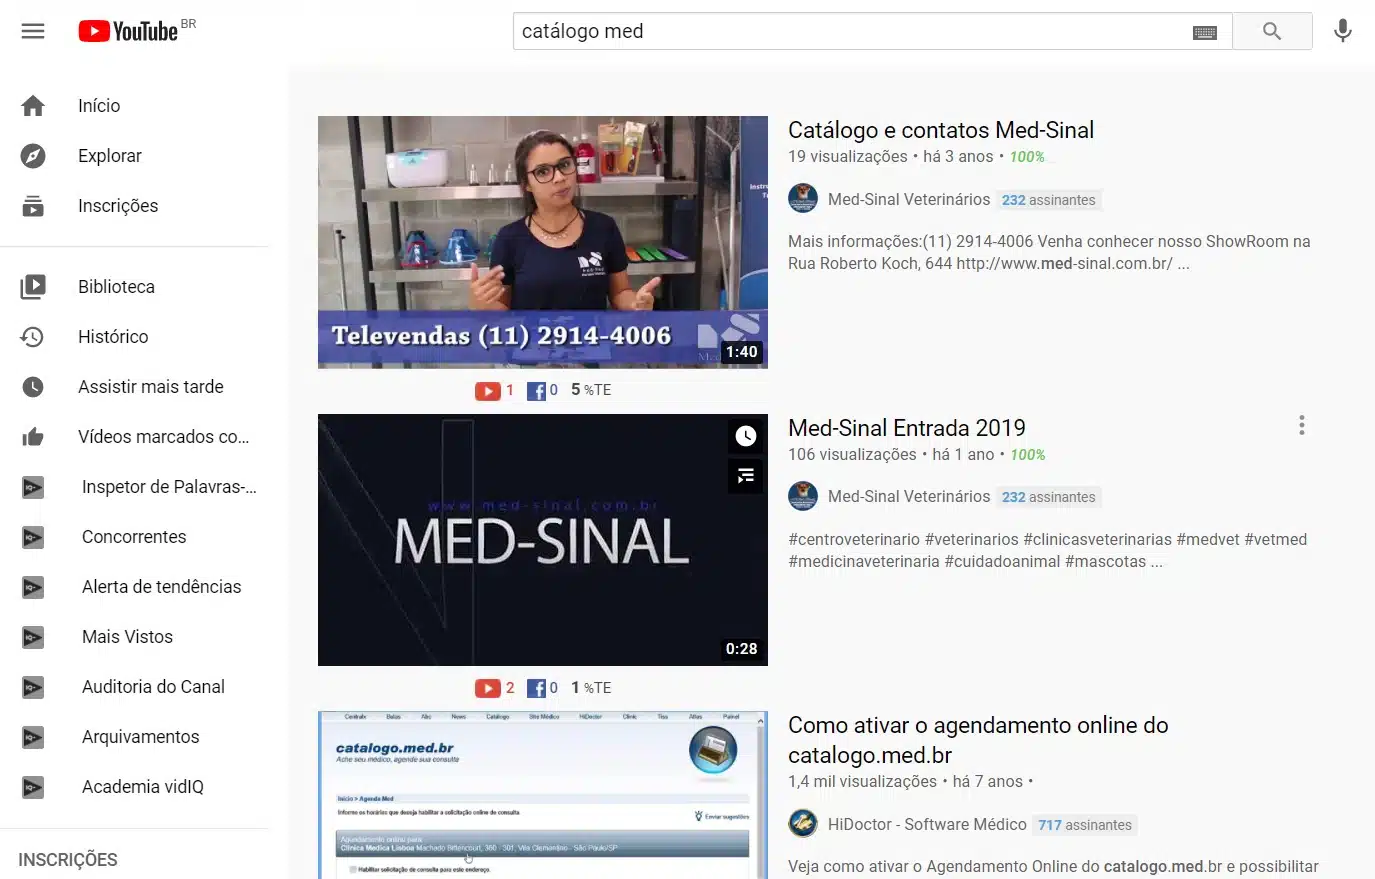 Catálogo Med - No YouTube